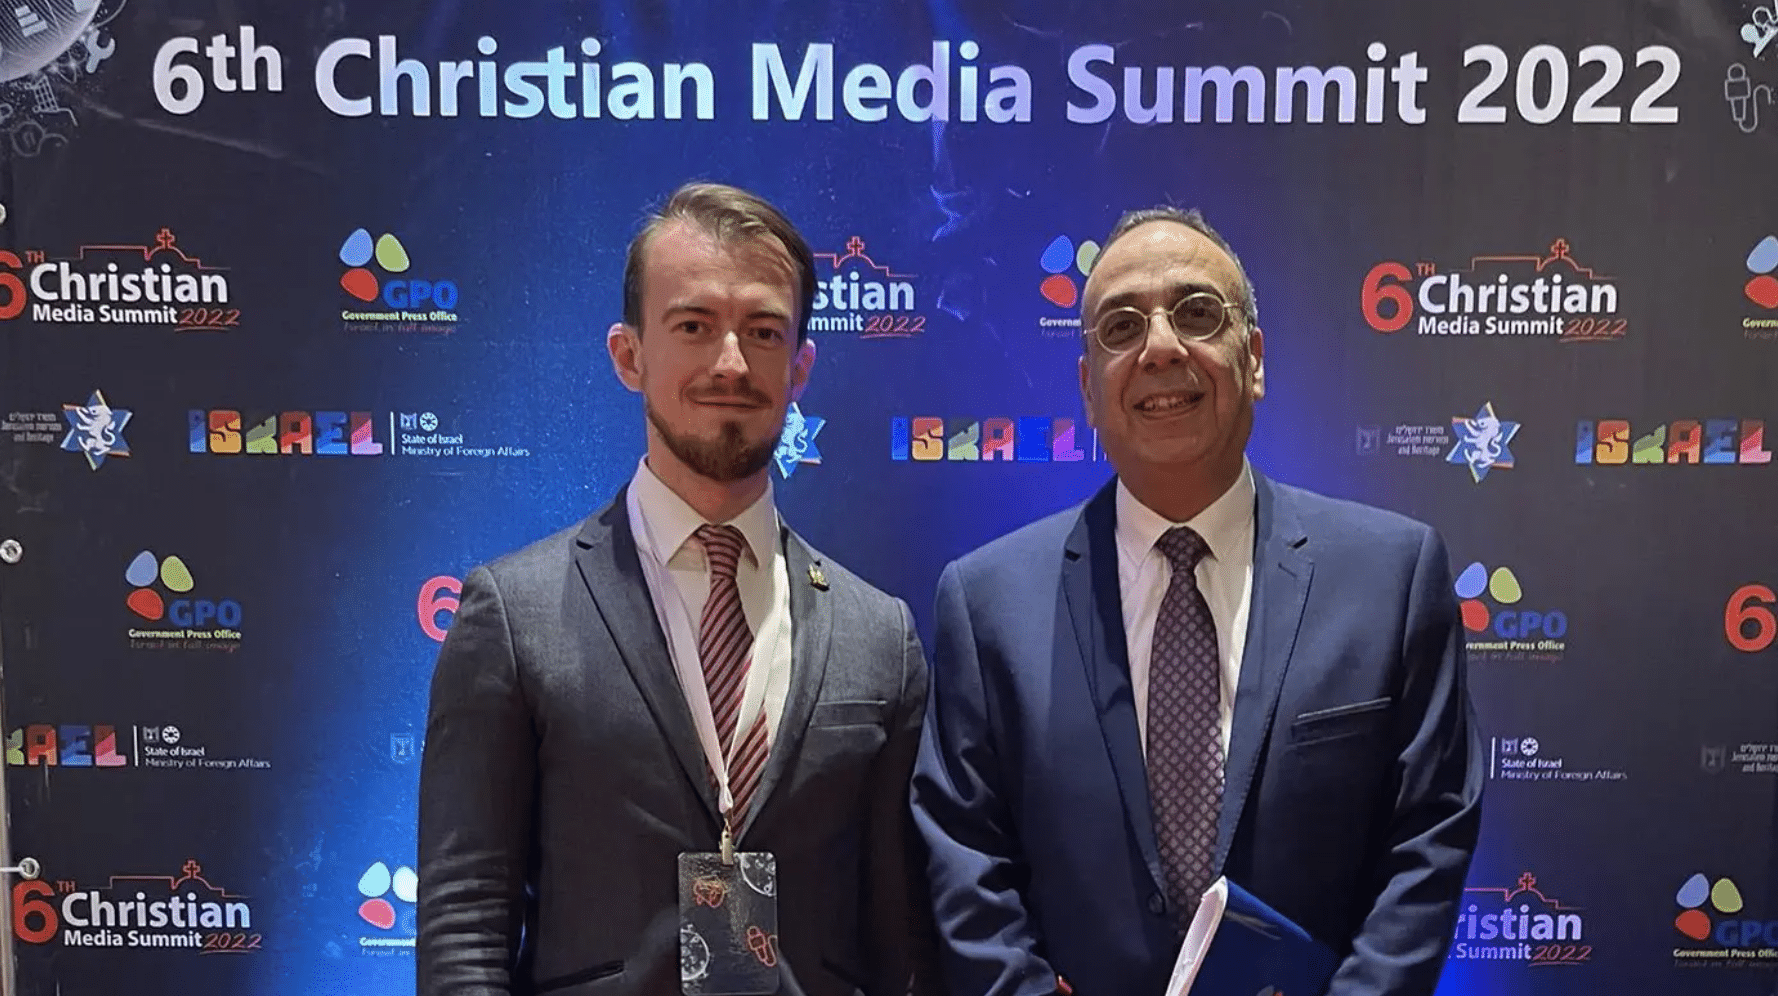 Le directeur de l’agence de presse basilica assiste au sommet des médias chrétiens 2022